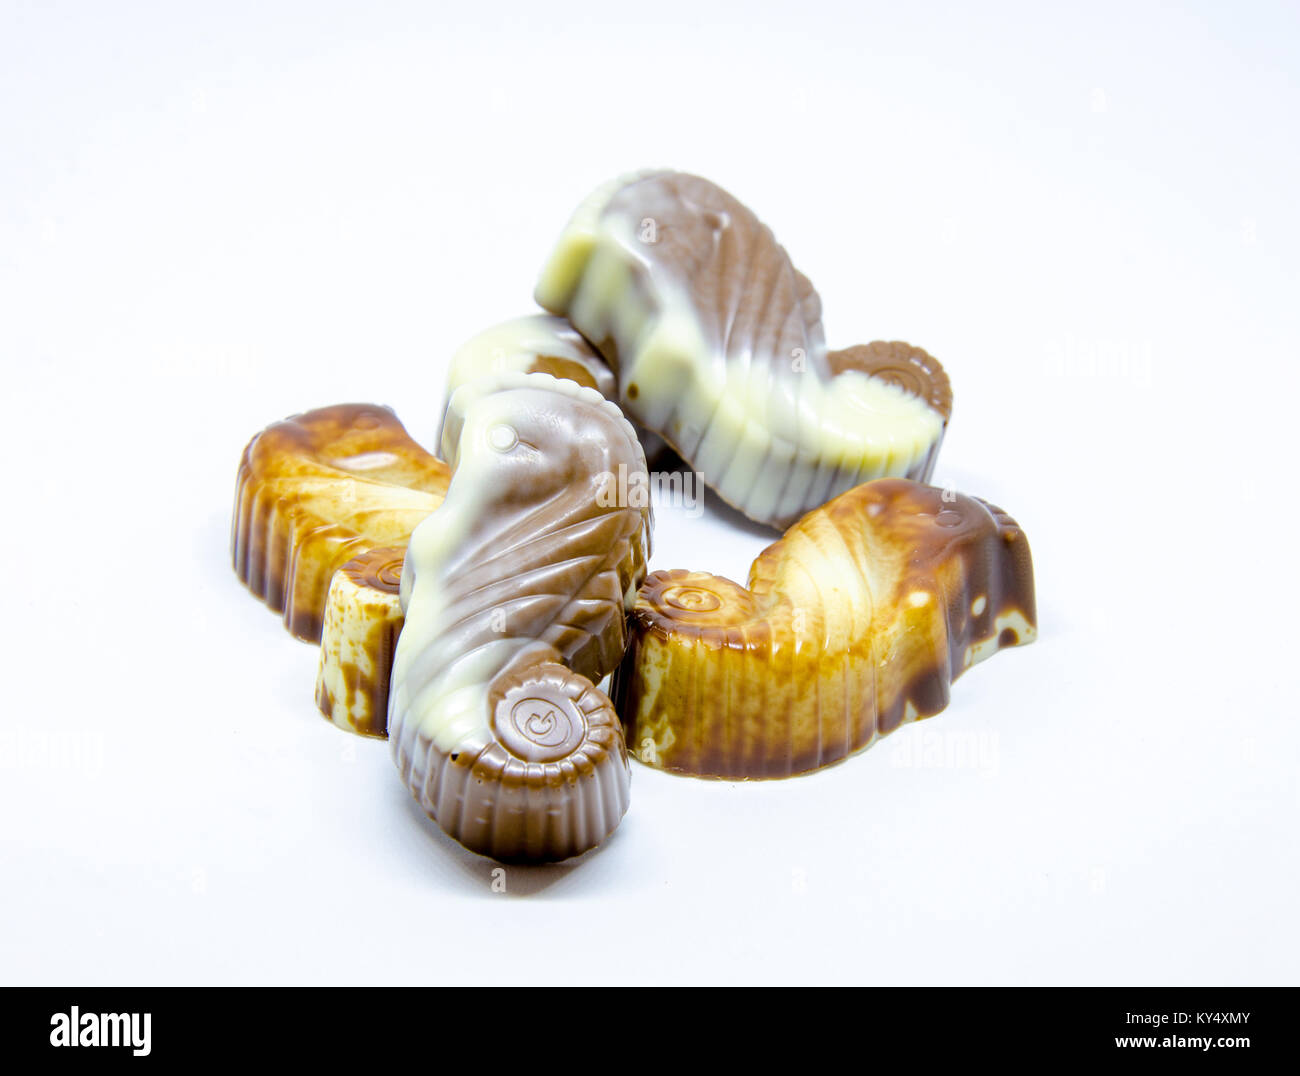 Les hippocampes en chocolat Guylian photographié sur un fond blanc. Banque D'Images